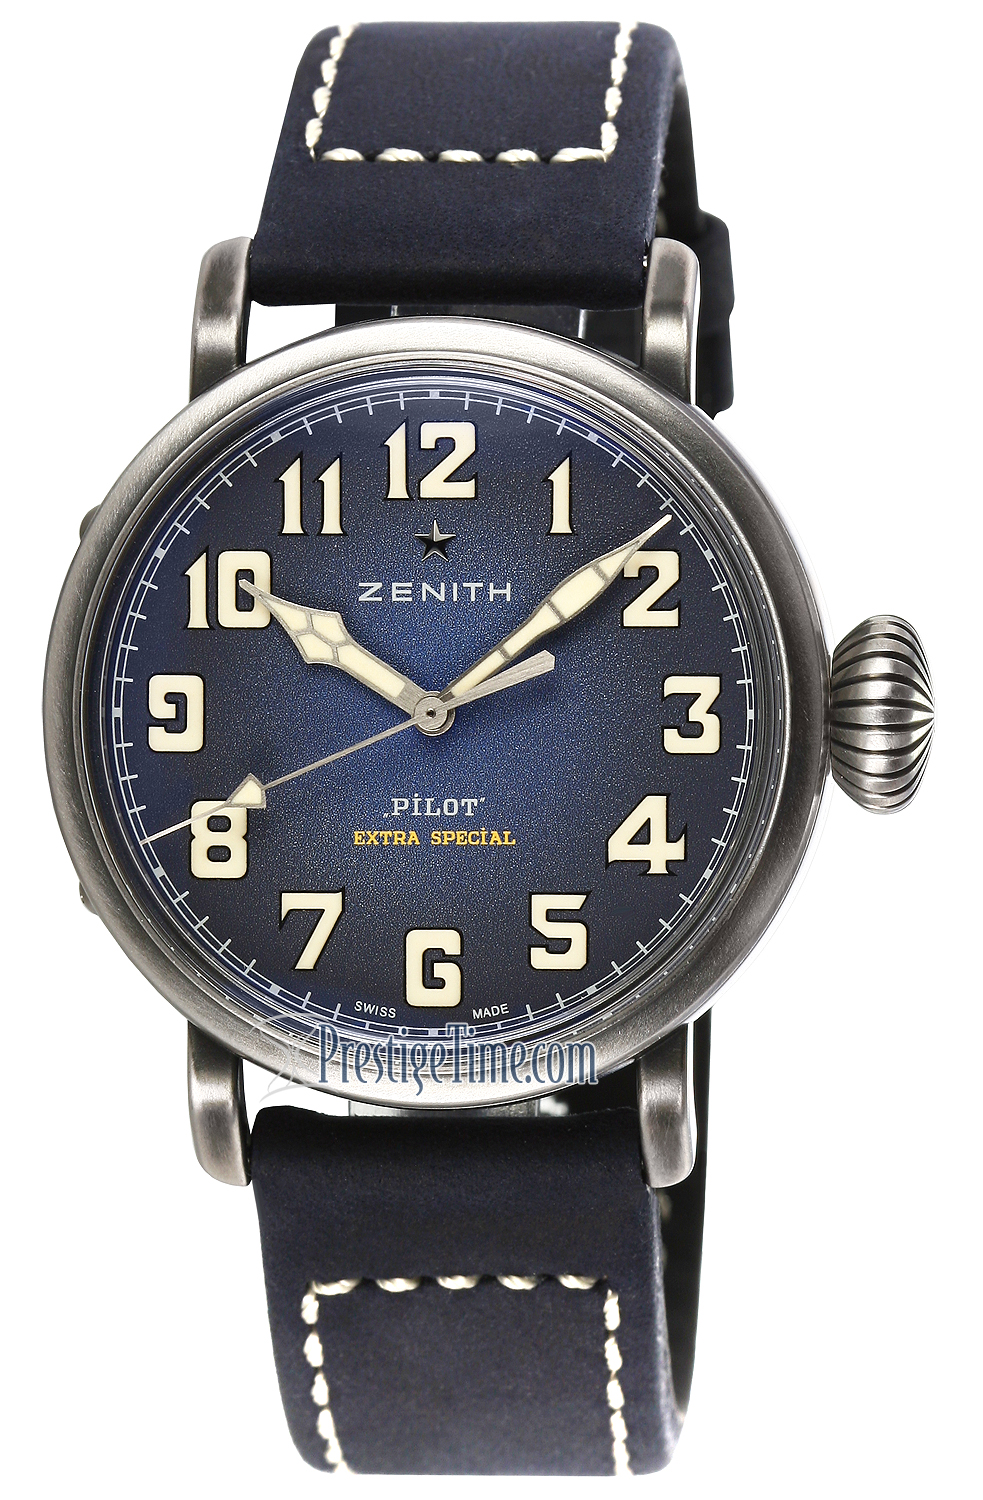 11.1942.679/53.c808 Zenith Pilot Type 20 Mens Watch